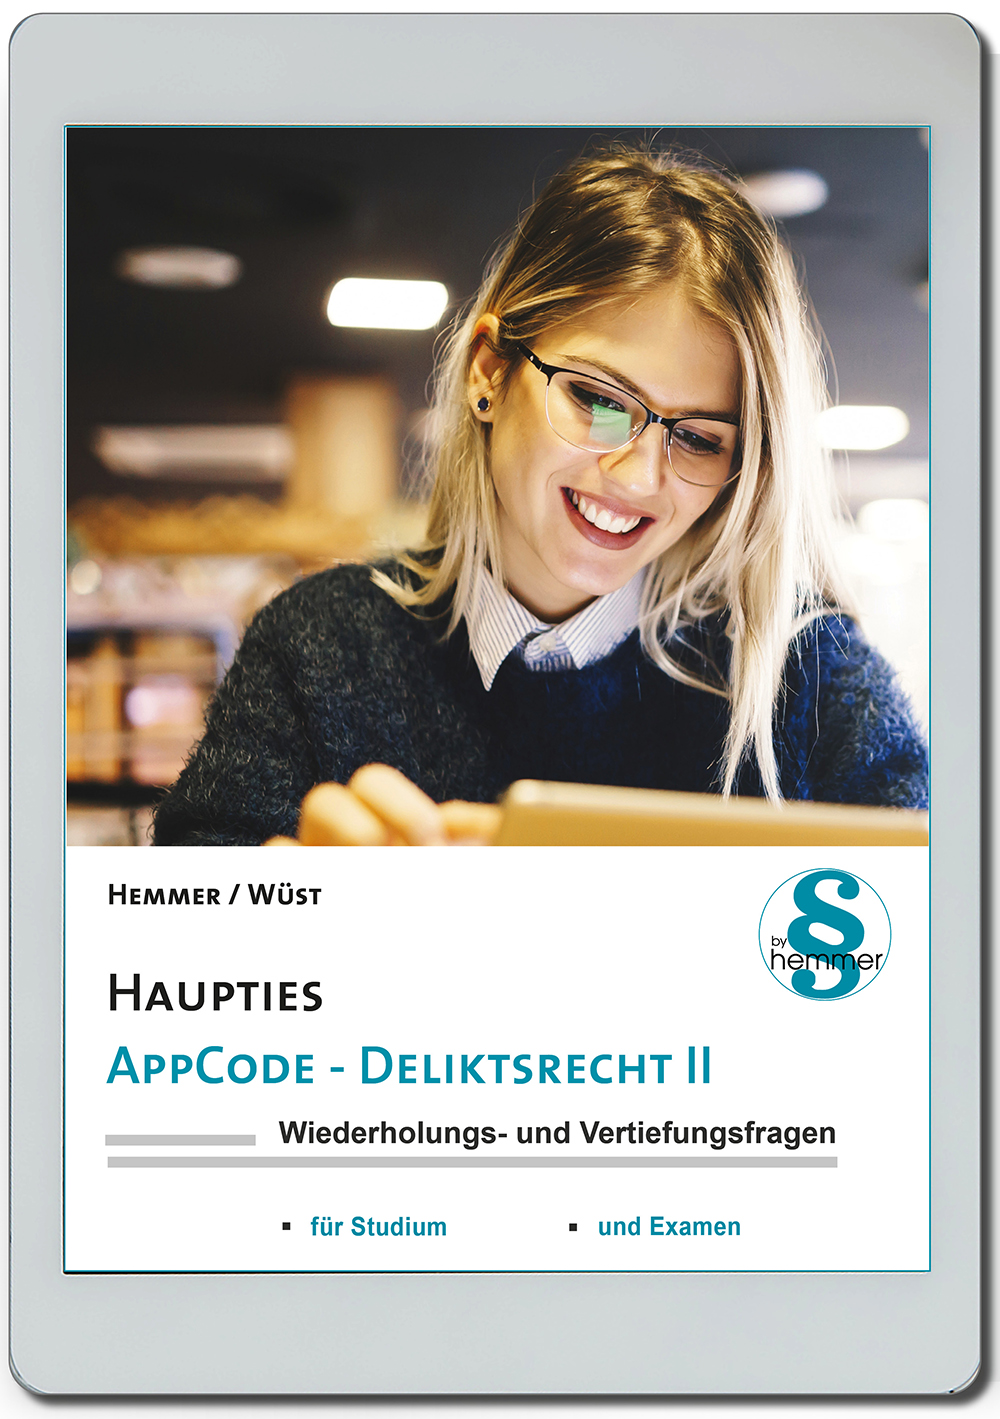 AppCode - haupties - Deliktsrecht II